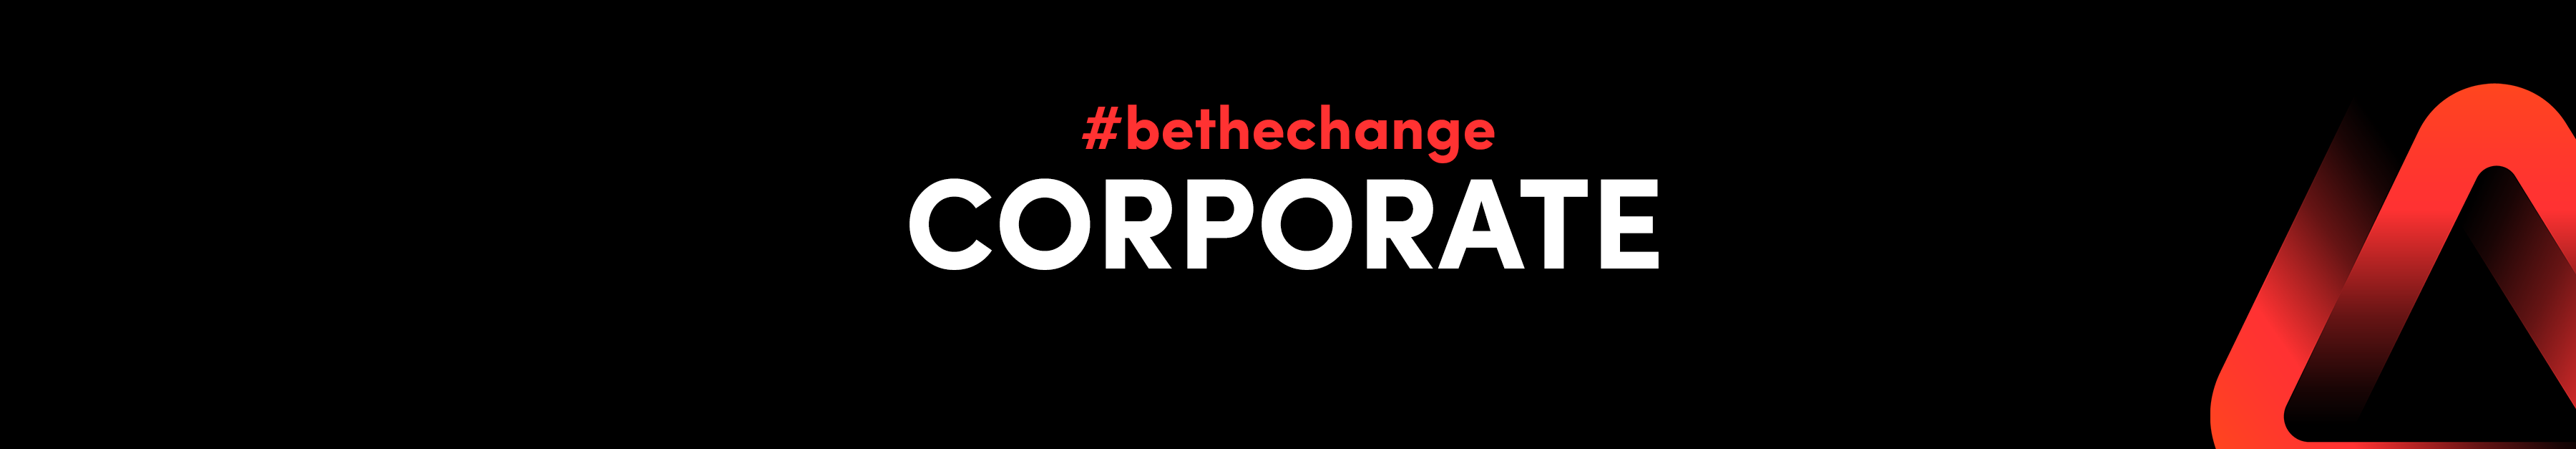 #bethechange Corporate - Mitgliedschaft als Firma 1